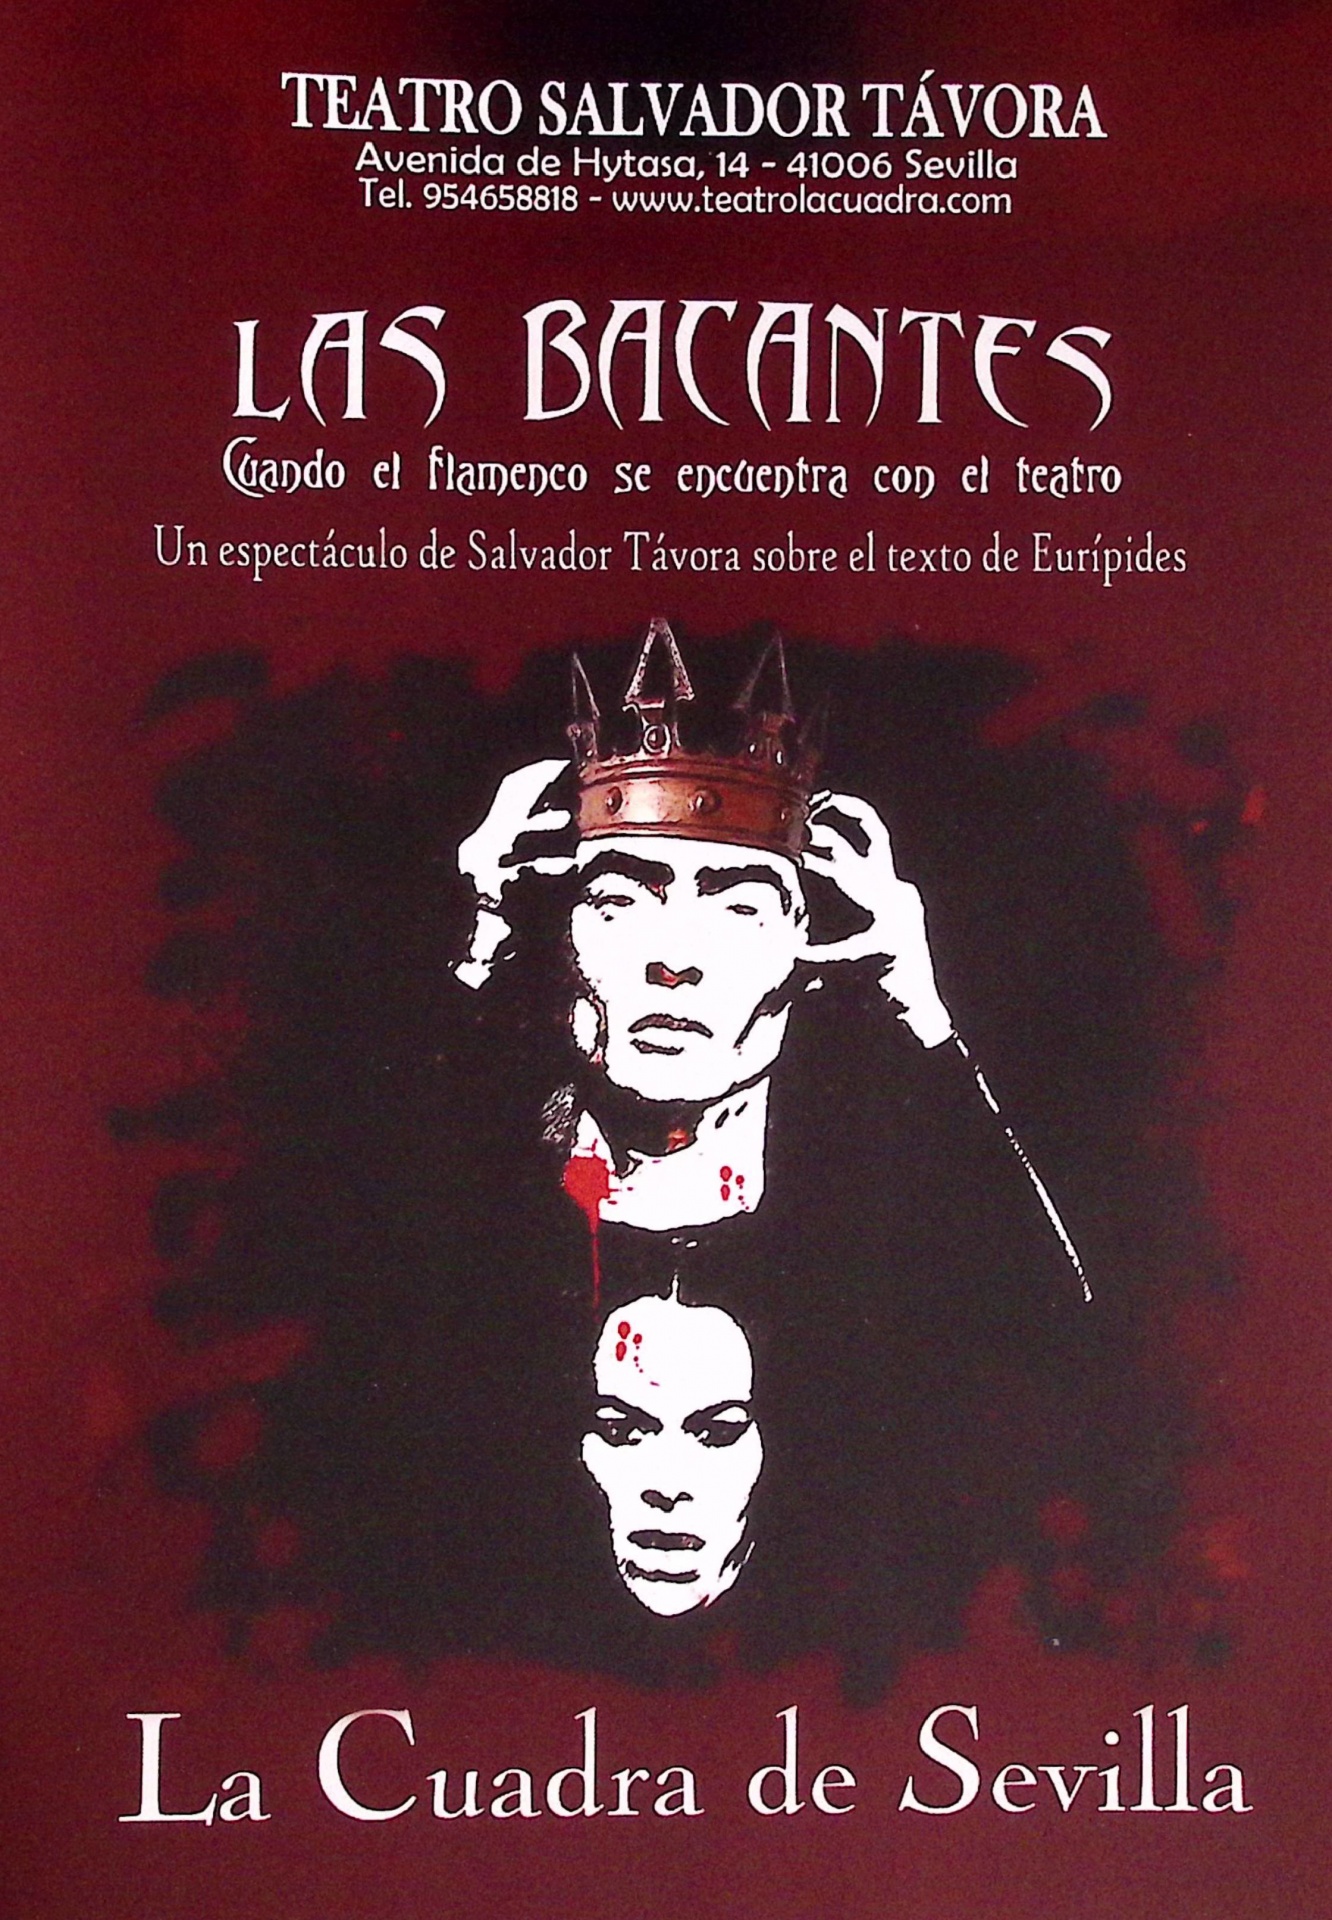 Las Bacantes. Cuando el flamenco se encuentra con el teatro. Un espectáculo de Salvador Távora sobre el texto de Eurípides. La Cuadra de Sevilla